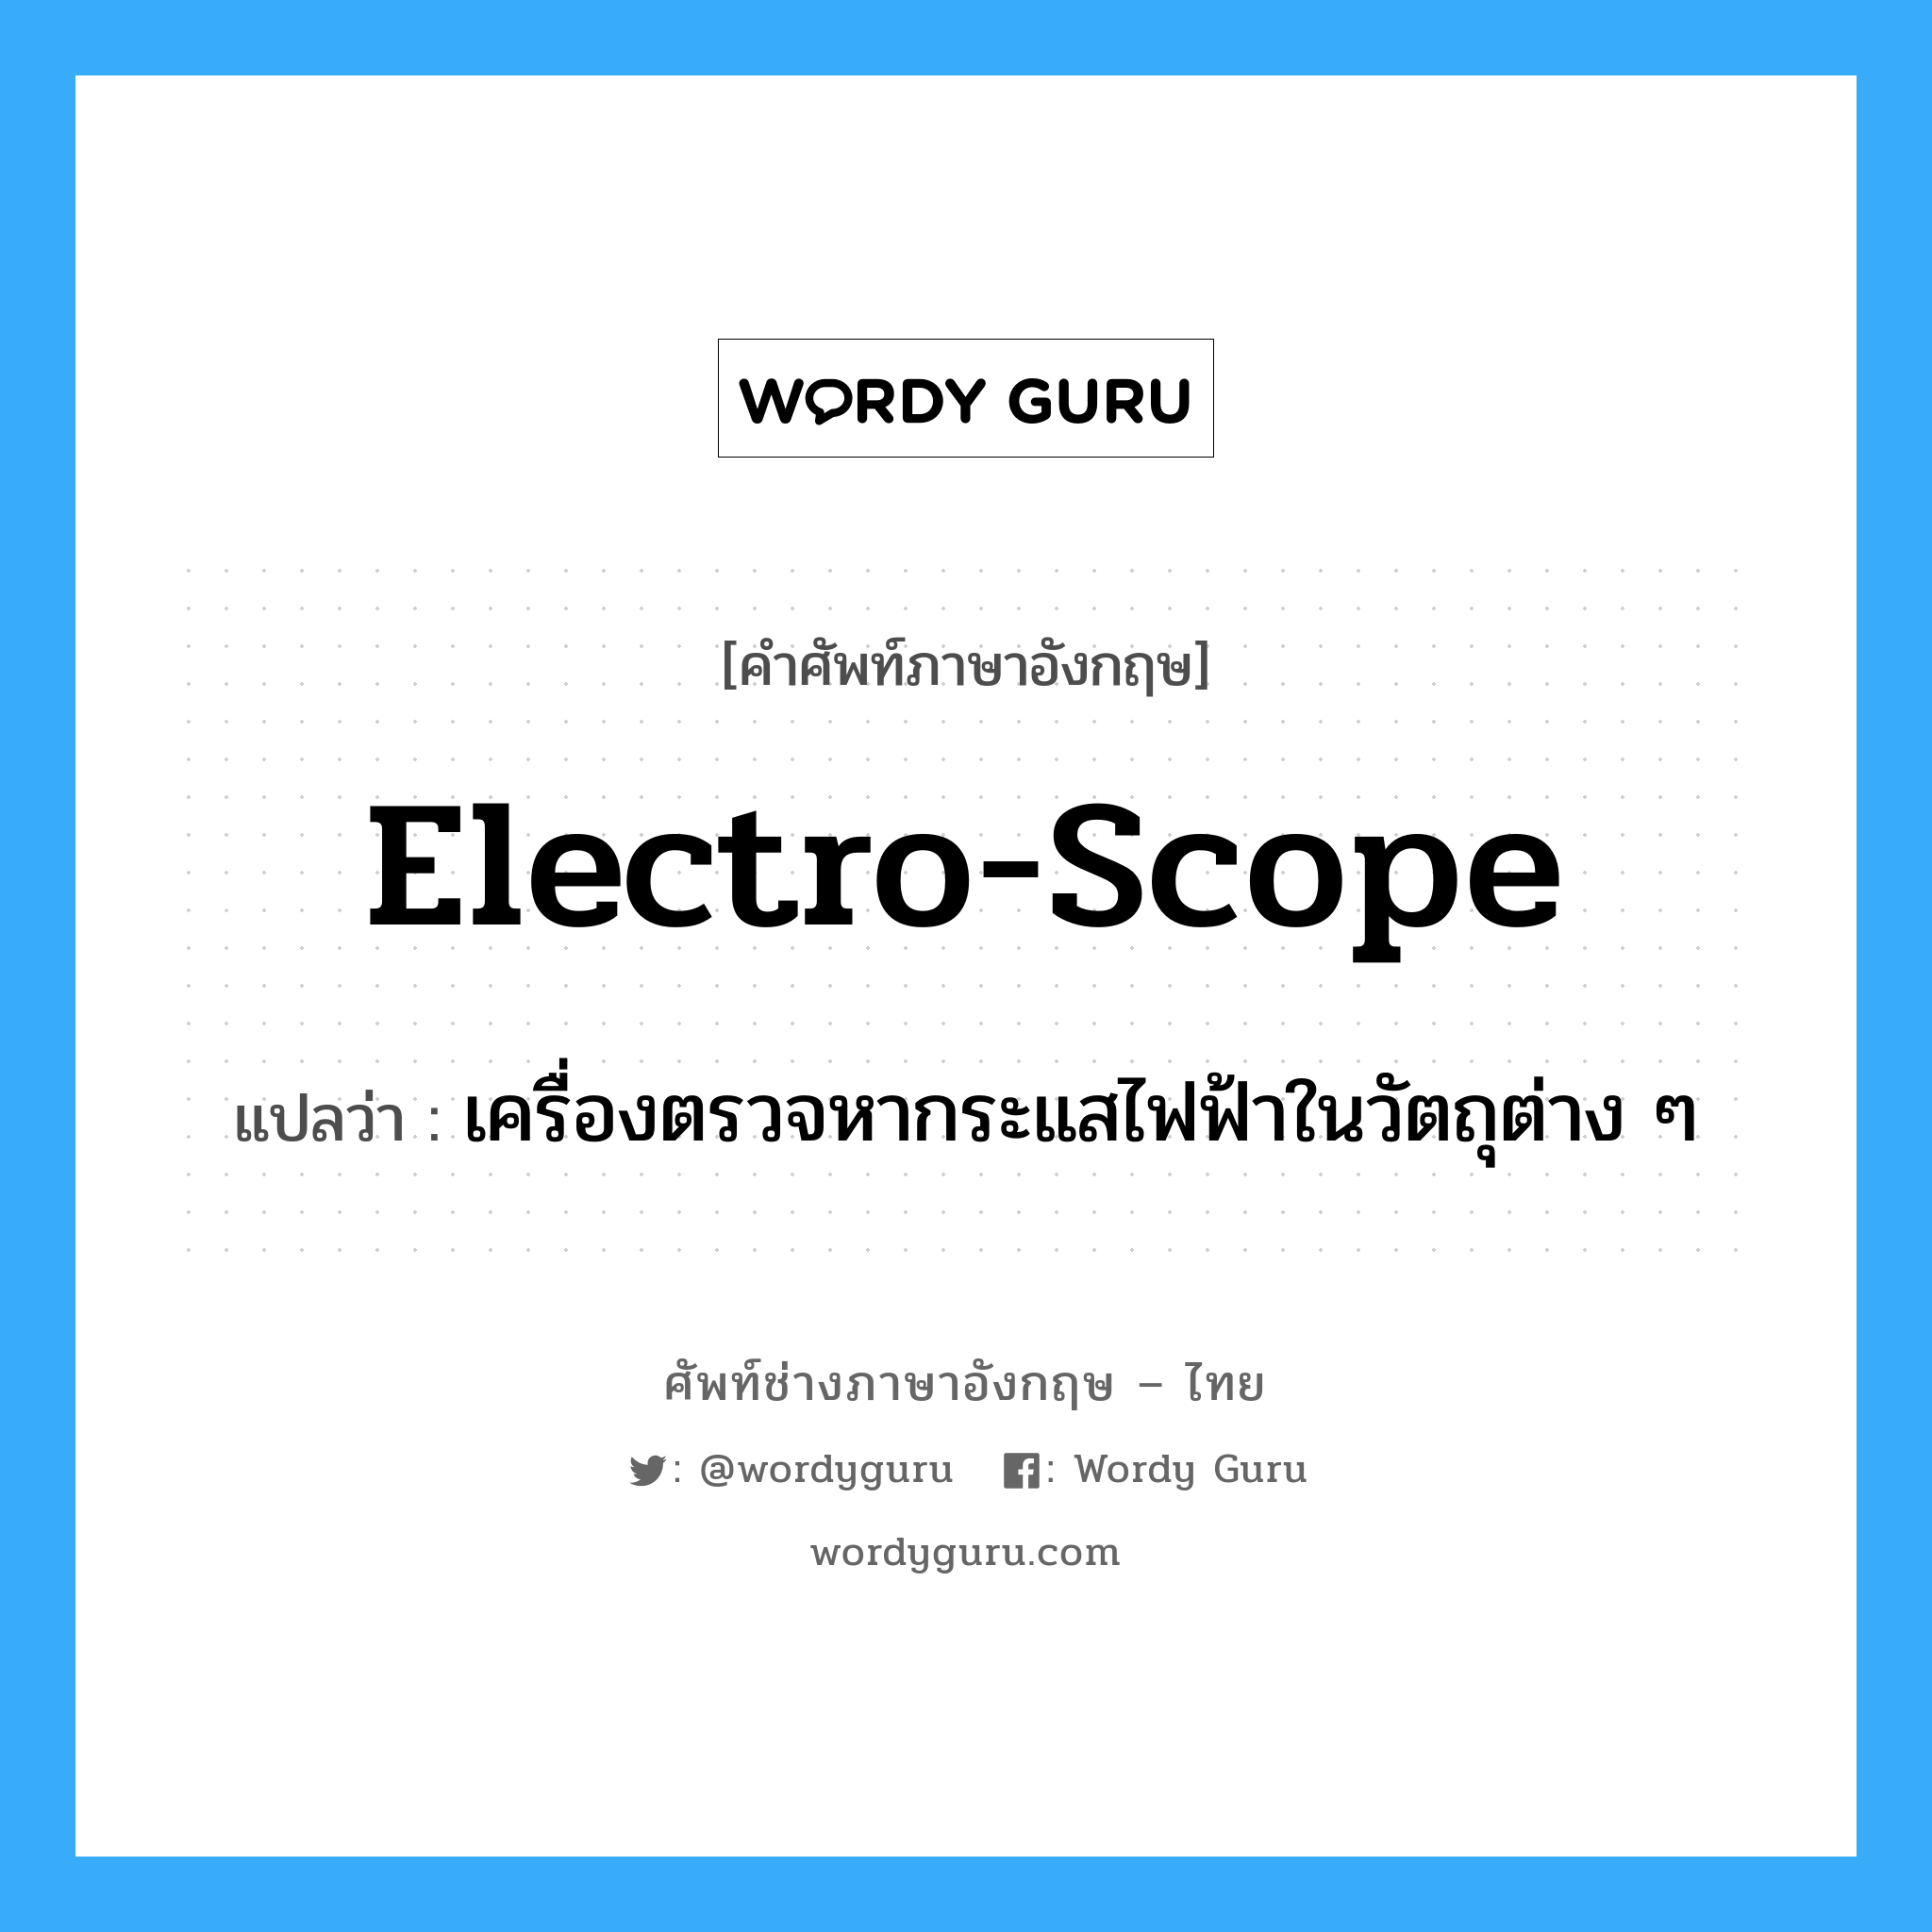 electro-scope แปลว่า?, คำศัพท์ช่างภาษาอังกฤษ - ไทย electro-scope คำศัพท์ภาษาอังกฤษ electro-scope แปลว่า เครื่องตรวจหากระแสไฟฟ้าในวัตถุต่าง ๆ